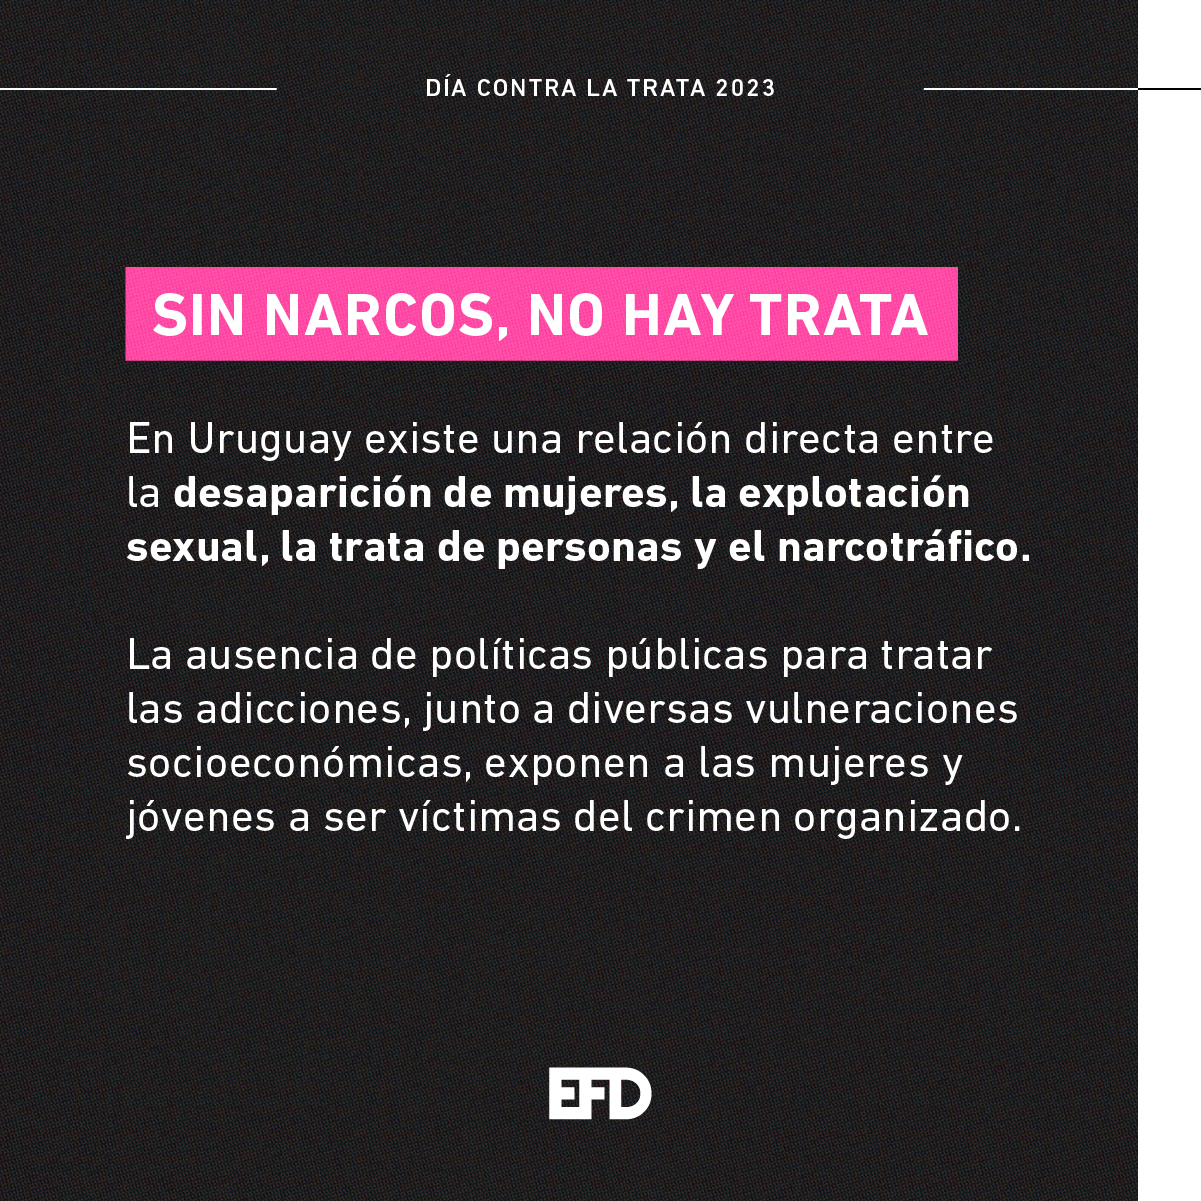 SIN NARCOS, NO HAY TRATA En Uruguay existe una relación directa entre la desaparición de mujeres, la explotación sexual, la trata de personas y el narcotráfico. La ausencia de políticas públicas para tratar las adicciones, junto a diversas vulneraciones socioeconómicas, exponen a las mujeres y jóvenes a ser víctimas del crimen organizado.